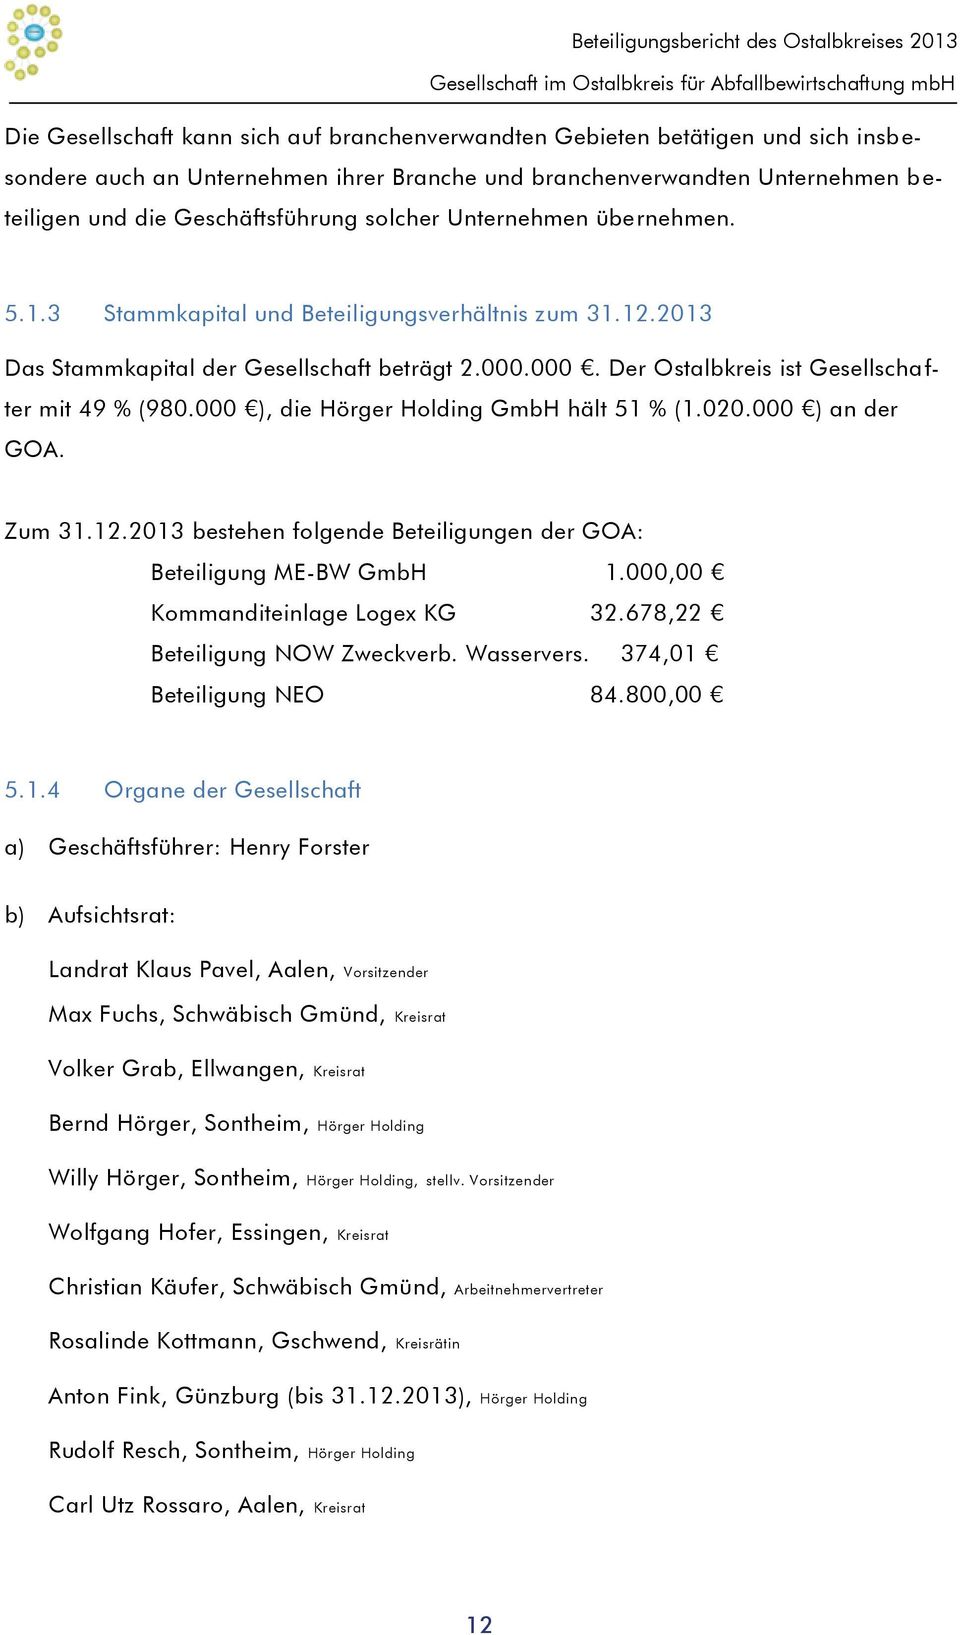 2013 Das Stammkapital der Gesellschaft beträgt 2.000.000. Der Ostalbkreis ist Gesellscha f- ter mit 49 % (980.000 ), die Hörger Holding GmbH hält 51 % (1.020.000 ) an der GOA. Zum 31.12.